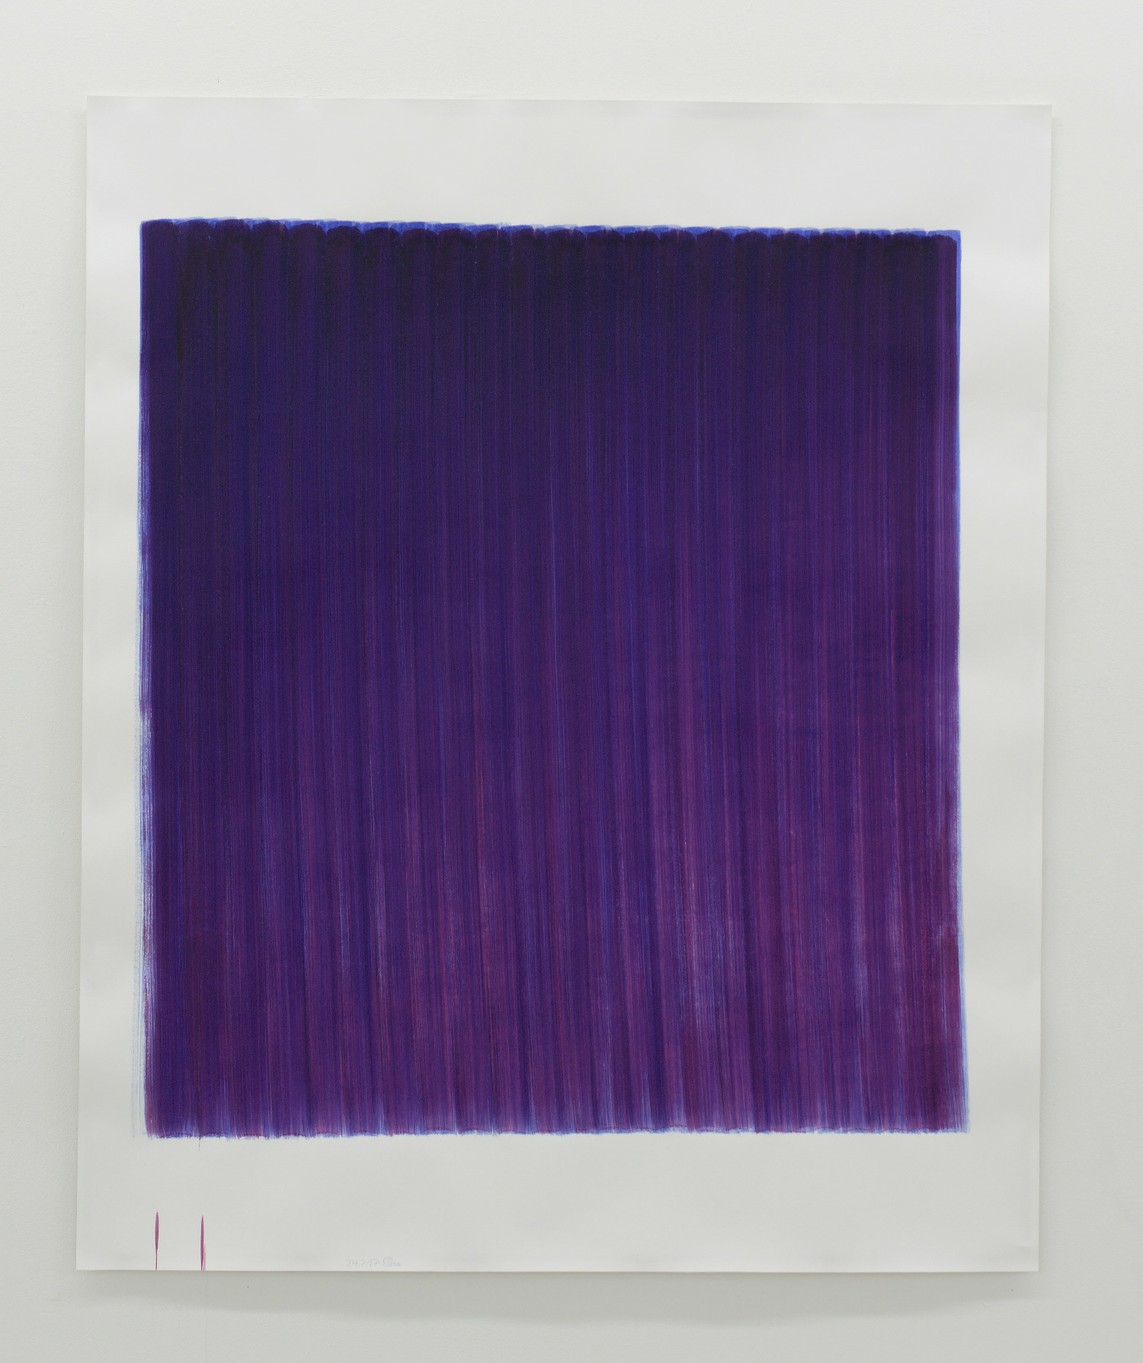 o.T. (24.2.17), Aquarell auf Papier, 2017, 185 x 152 cm 